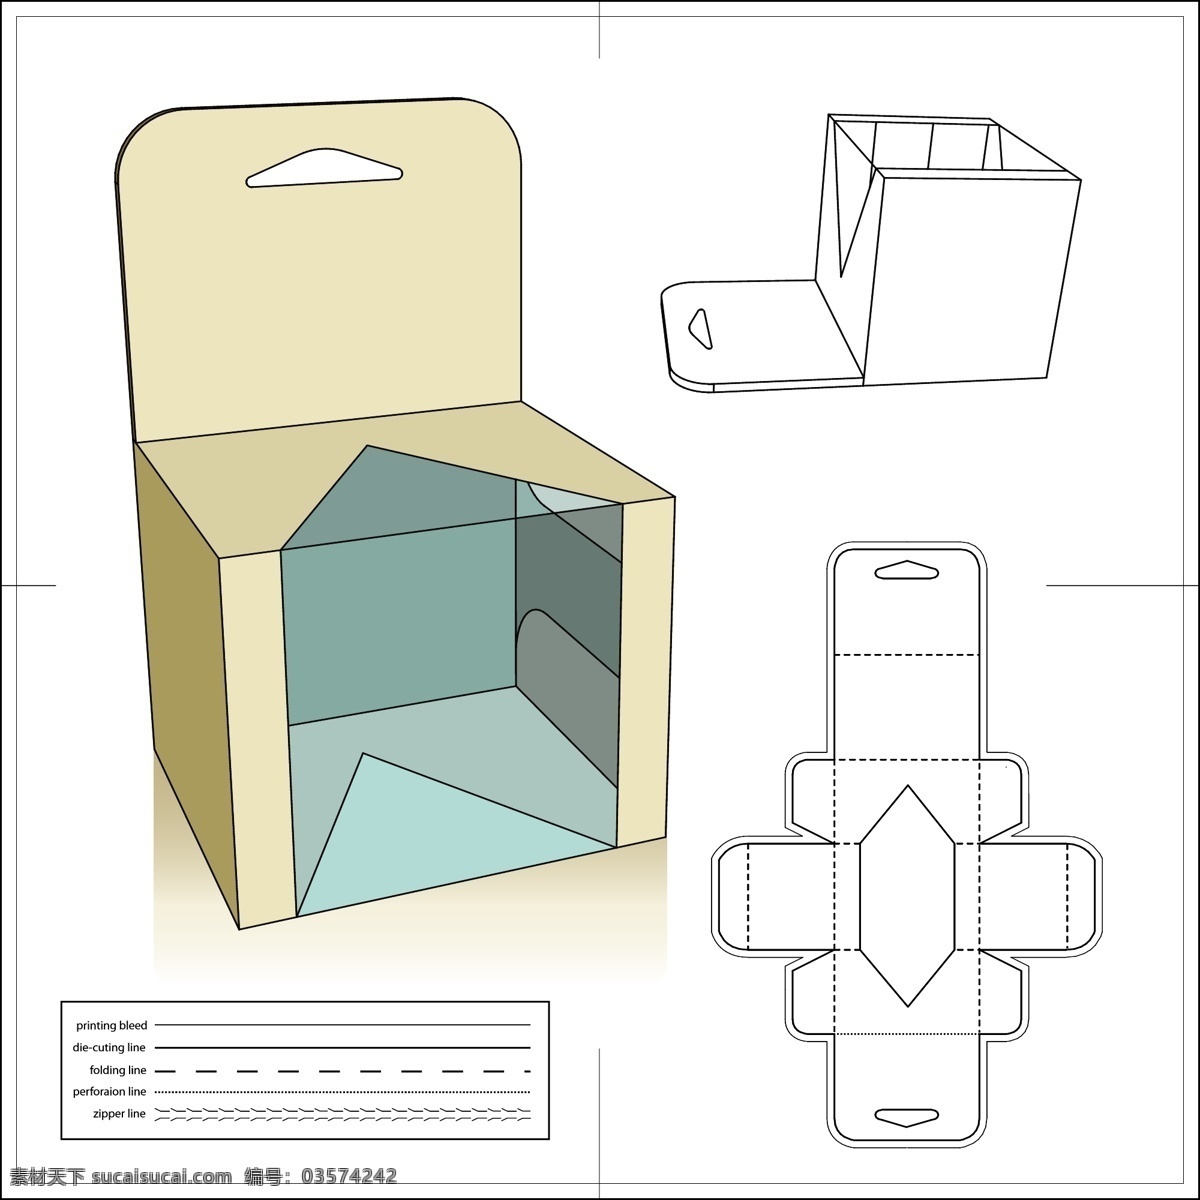 创意 包装盒 模板 含 刀模 包装盒模板 包装盒展开图 包装模板 包装设计 纸盒 纸箱 包装模型 纸制包装 含刀模 包装盒平铺图 矢量图